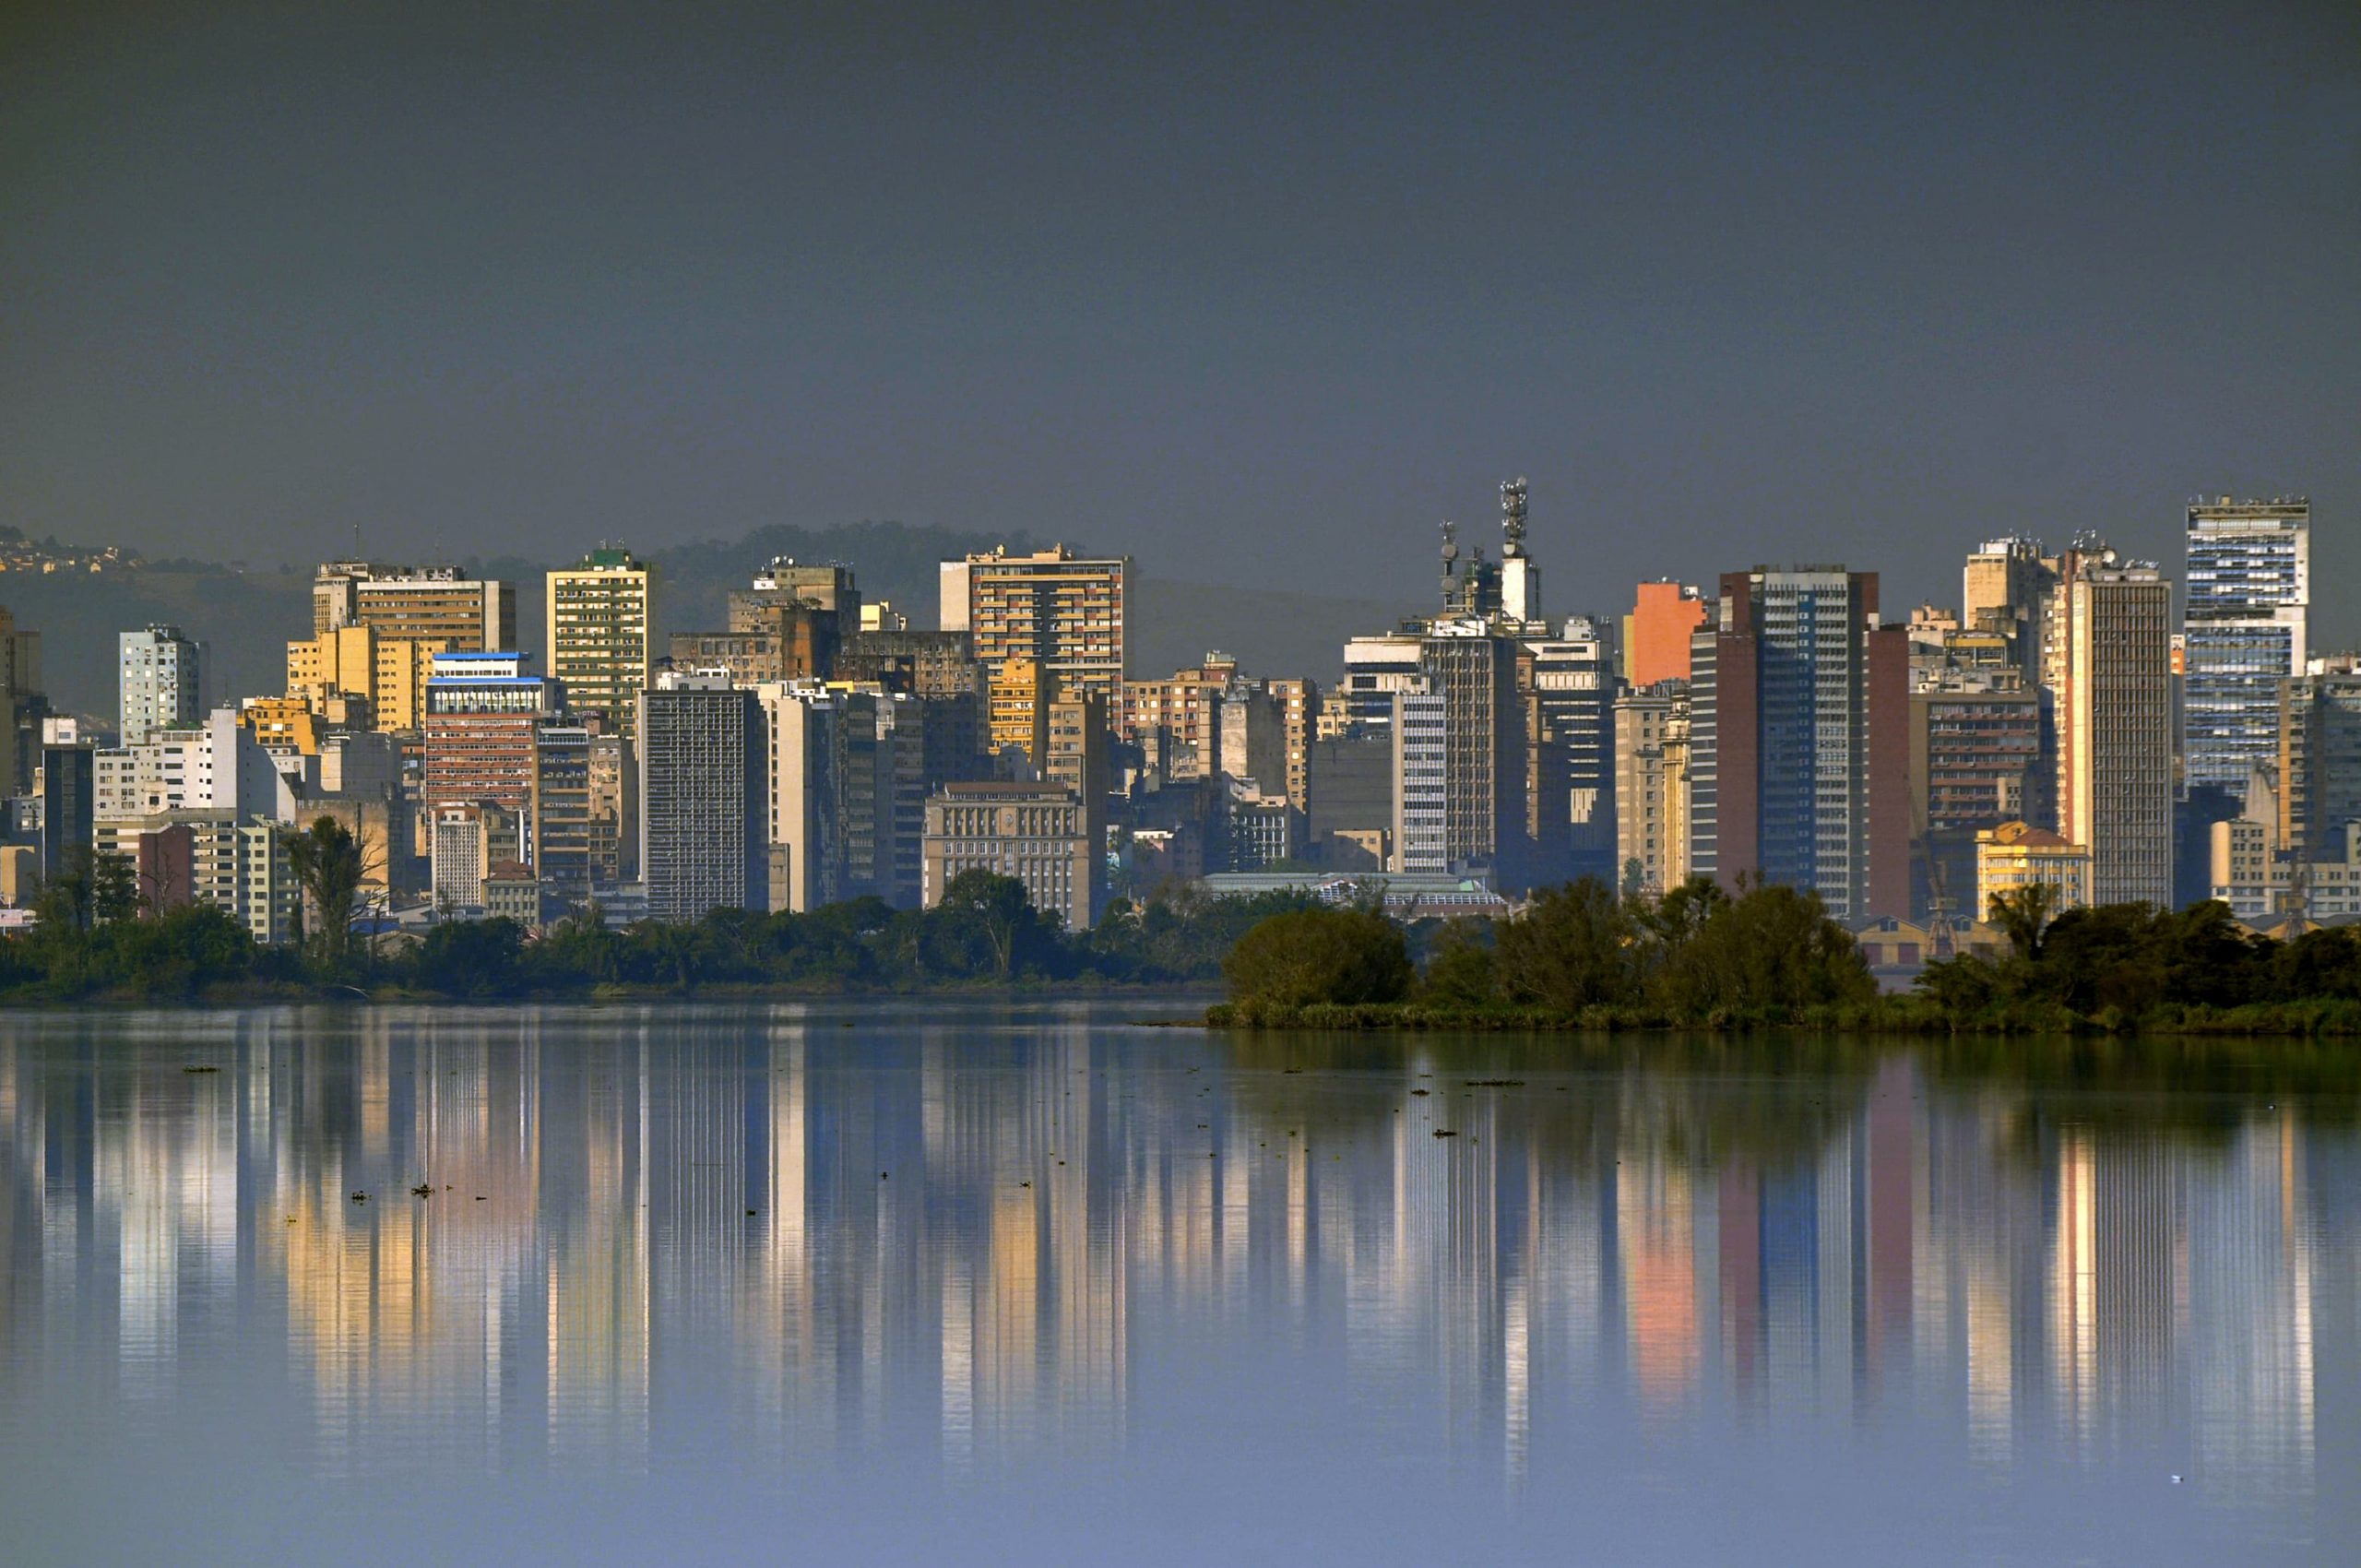 Porto Alegre é a 2ª capital mais competitiva do Brasil